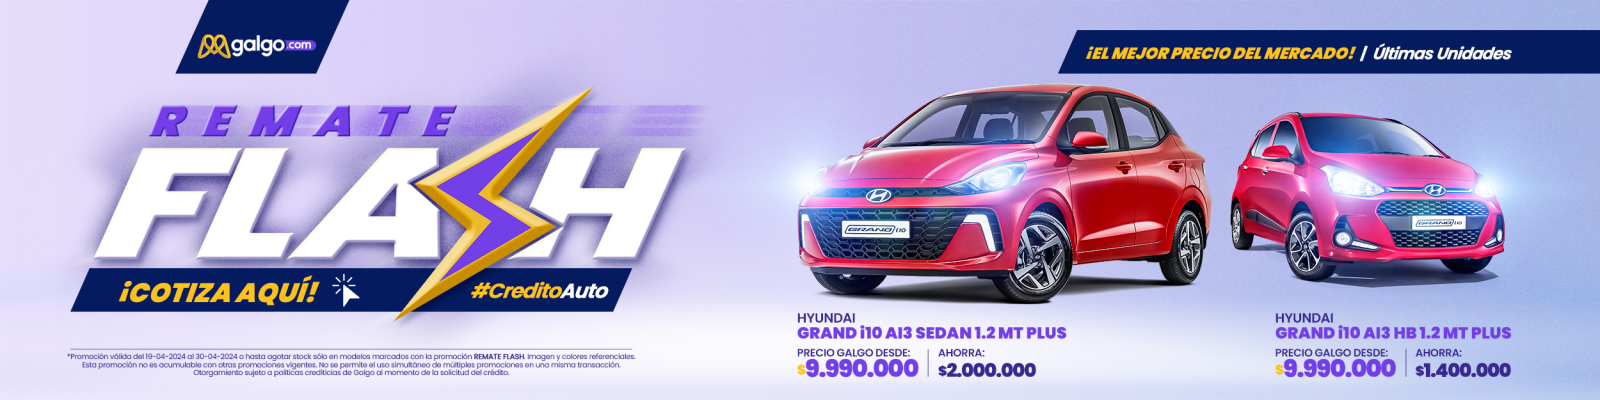 Remate en Hyundai, con los mejores precios del mercado, solo en Galgo